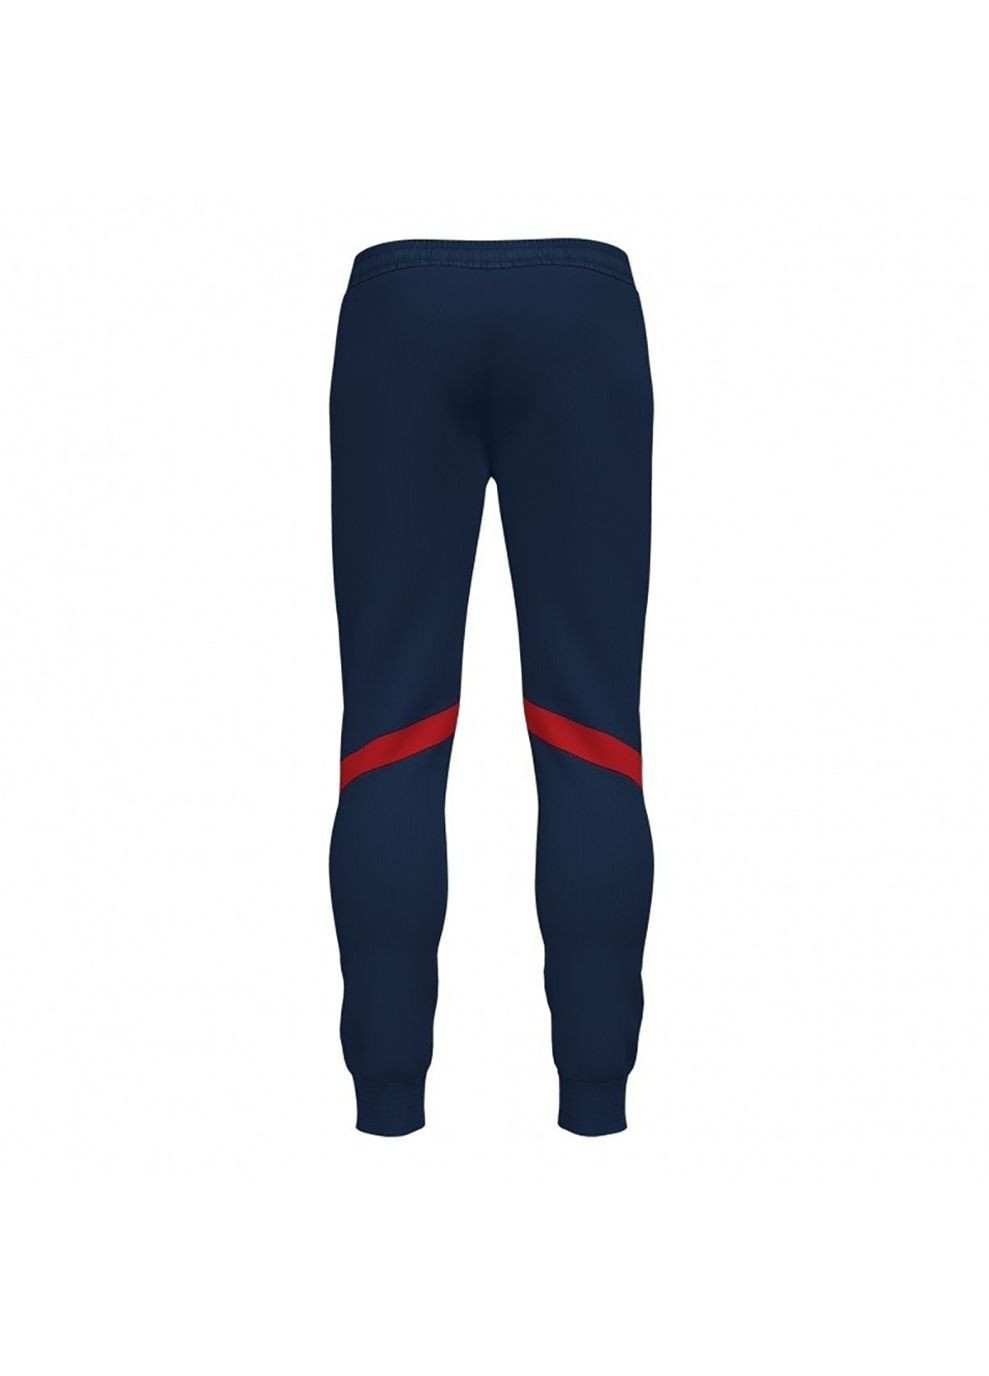 Синие спортивные демисезонные брюки Joma